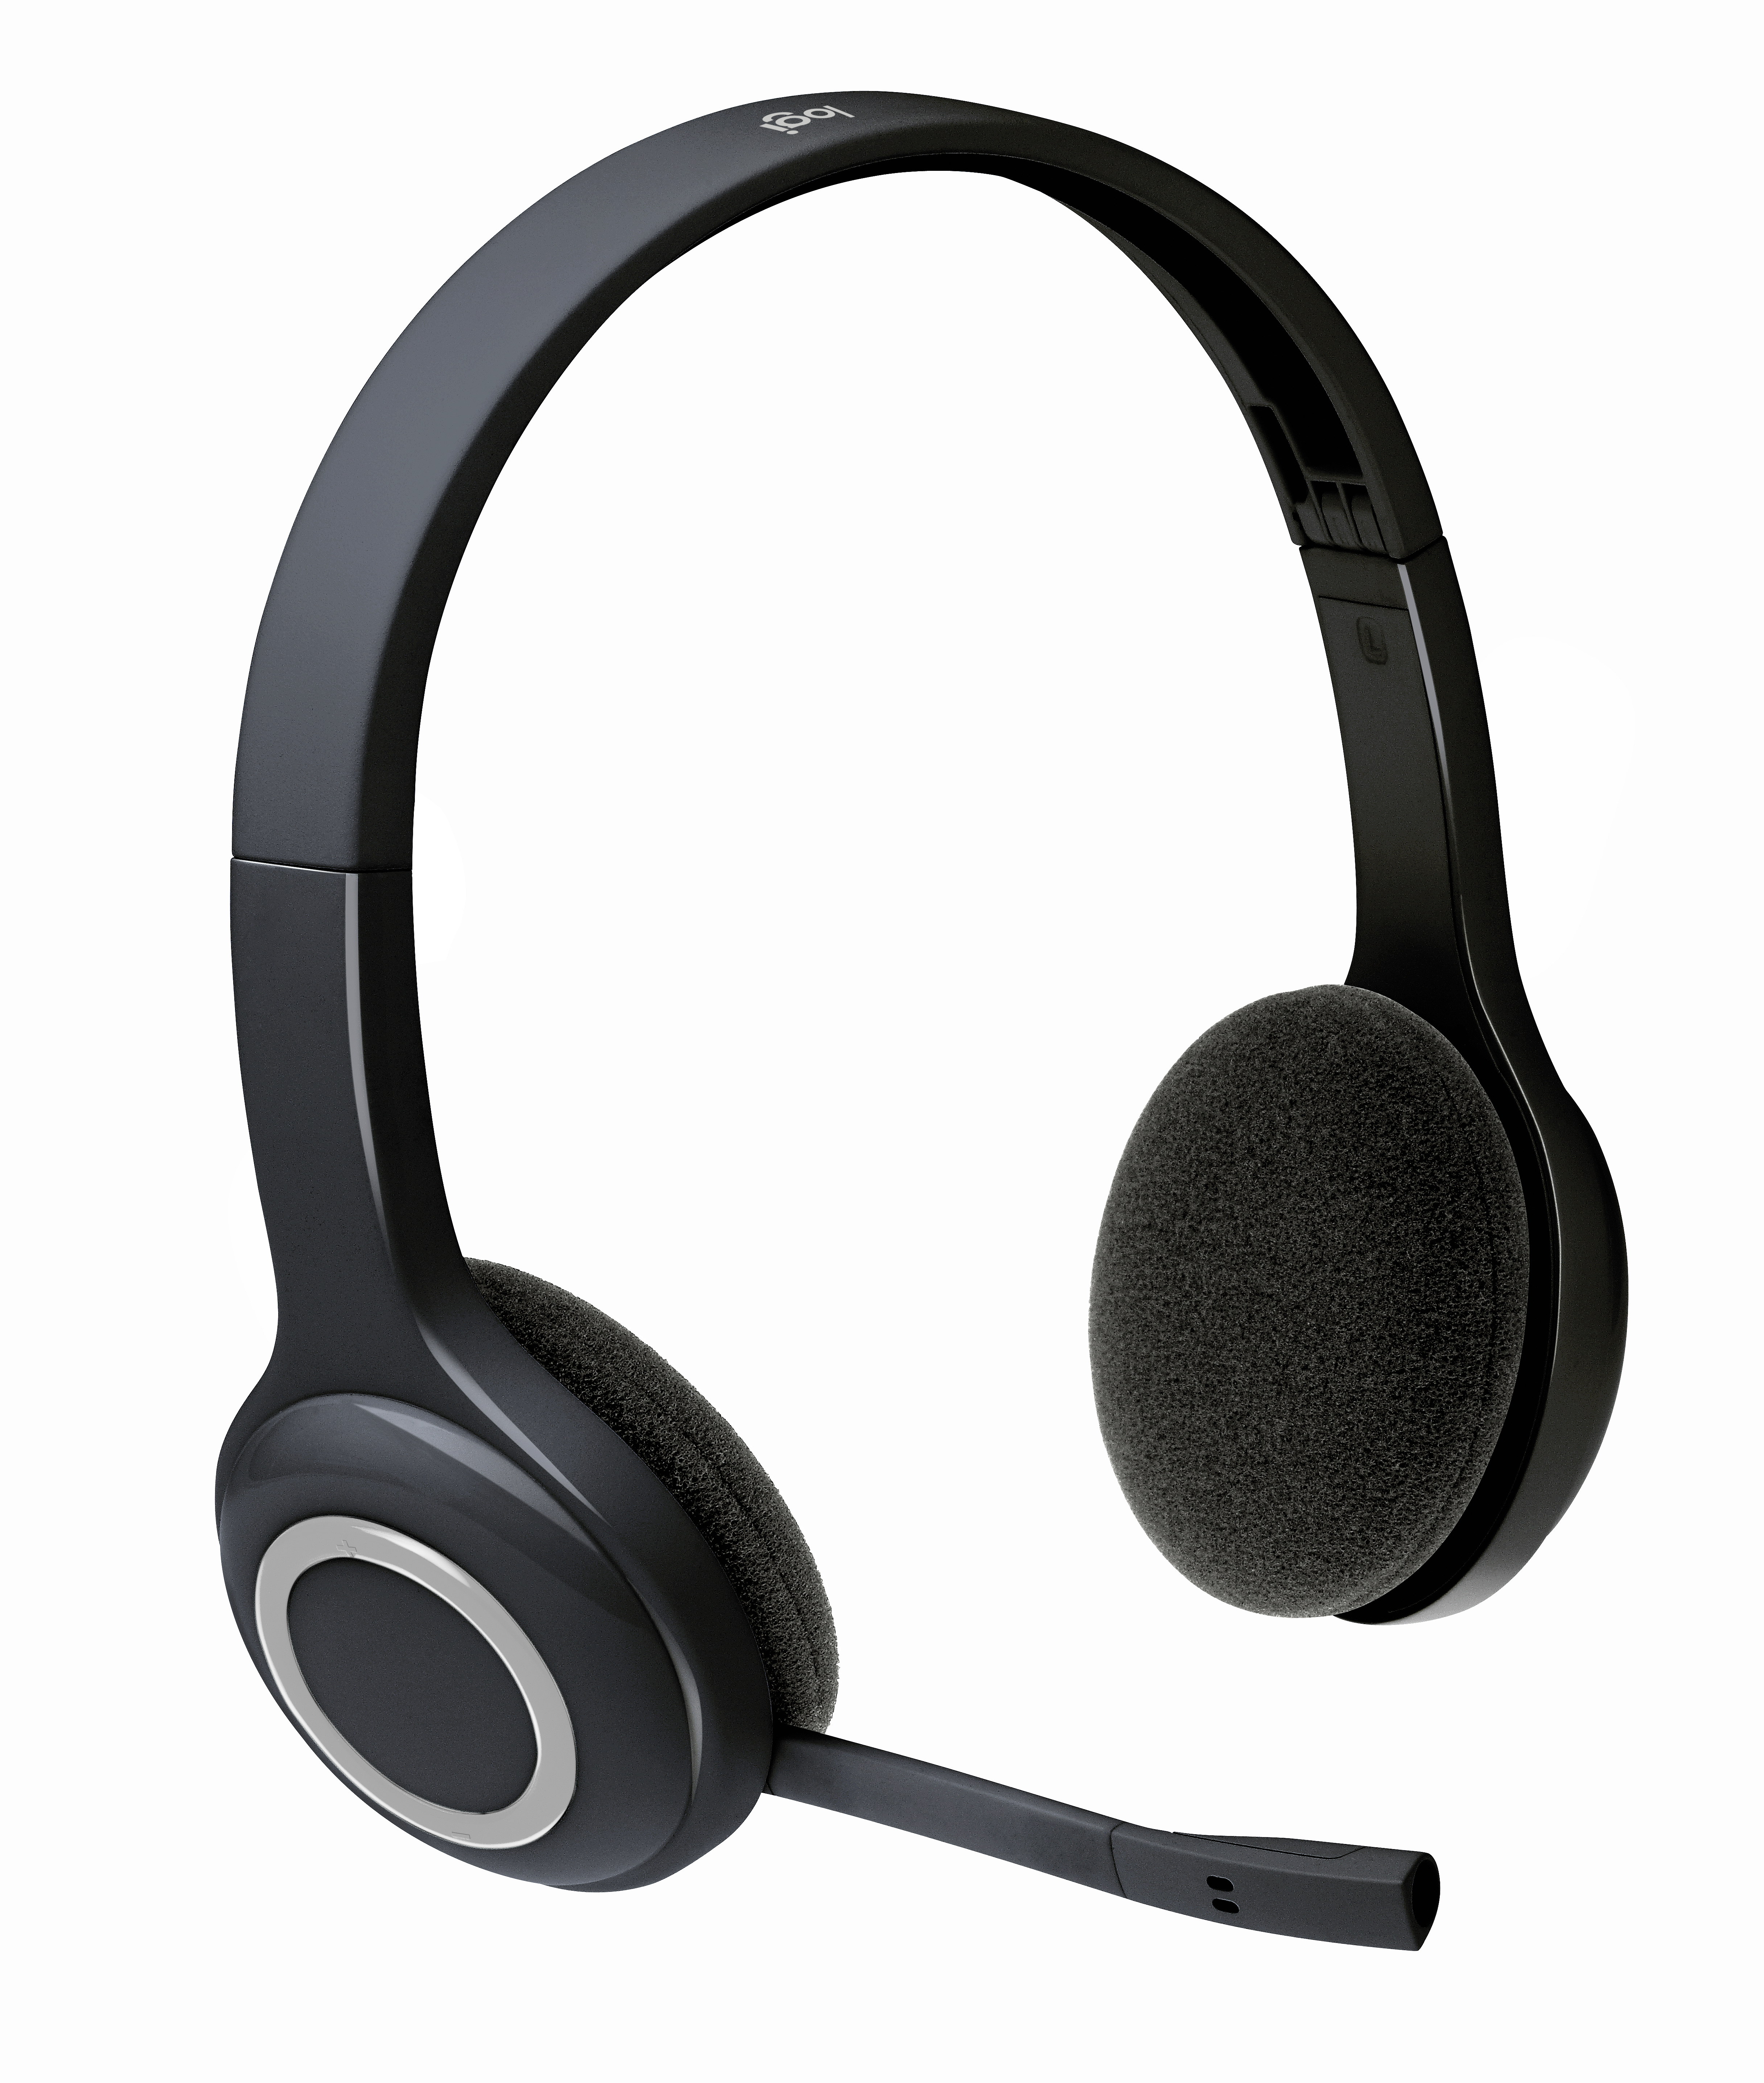 Logitech Wireless Headset H600 - Headset - On-Ear